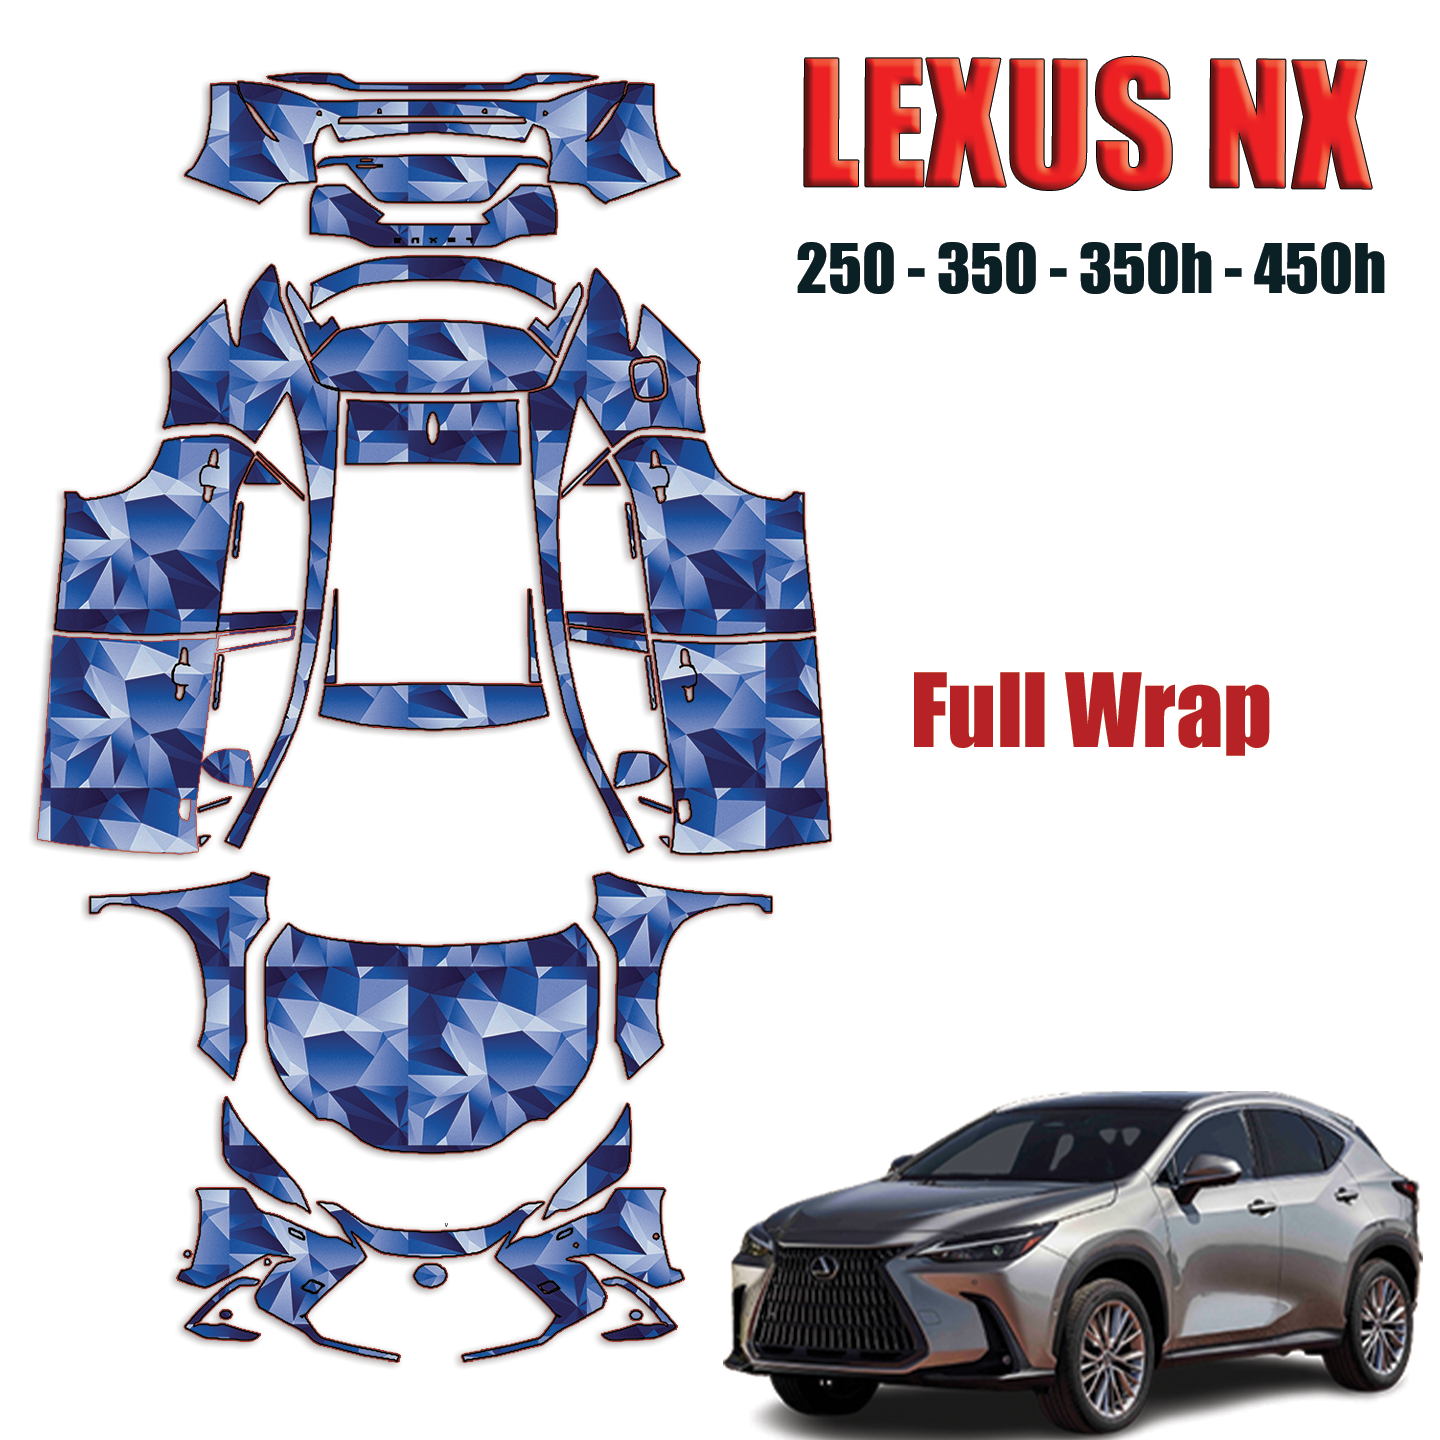 2022-2024 Lexus NX 250, 350, 350h, 450h Pre Cut Paint Protection Kit – Full Wrap Vehicle